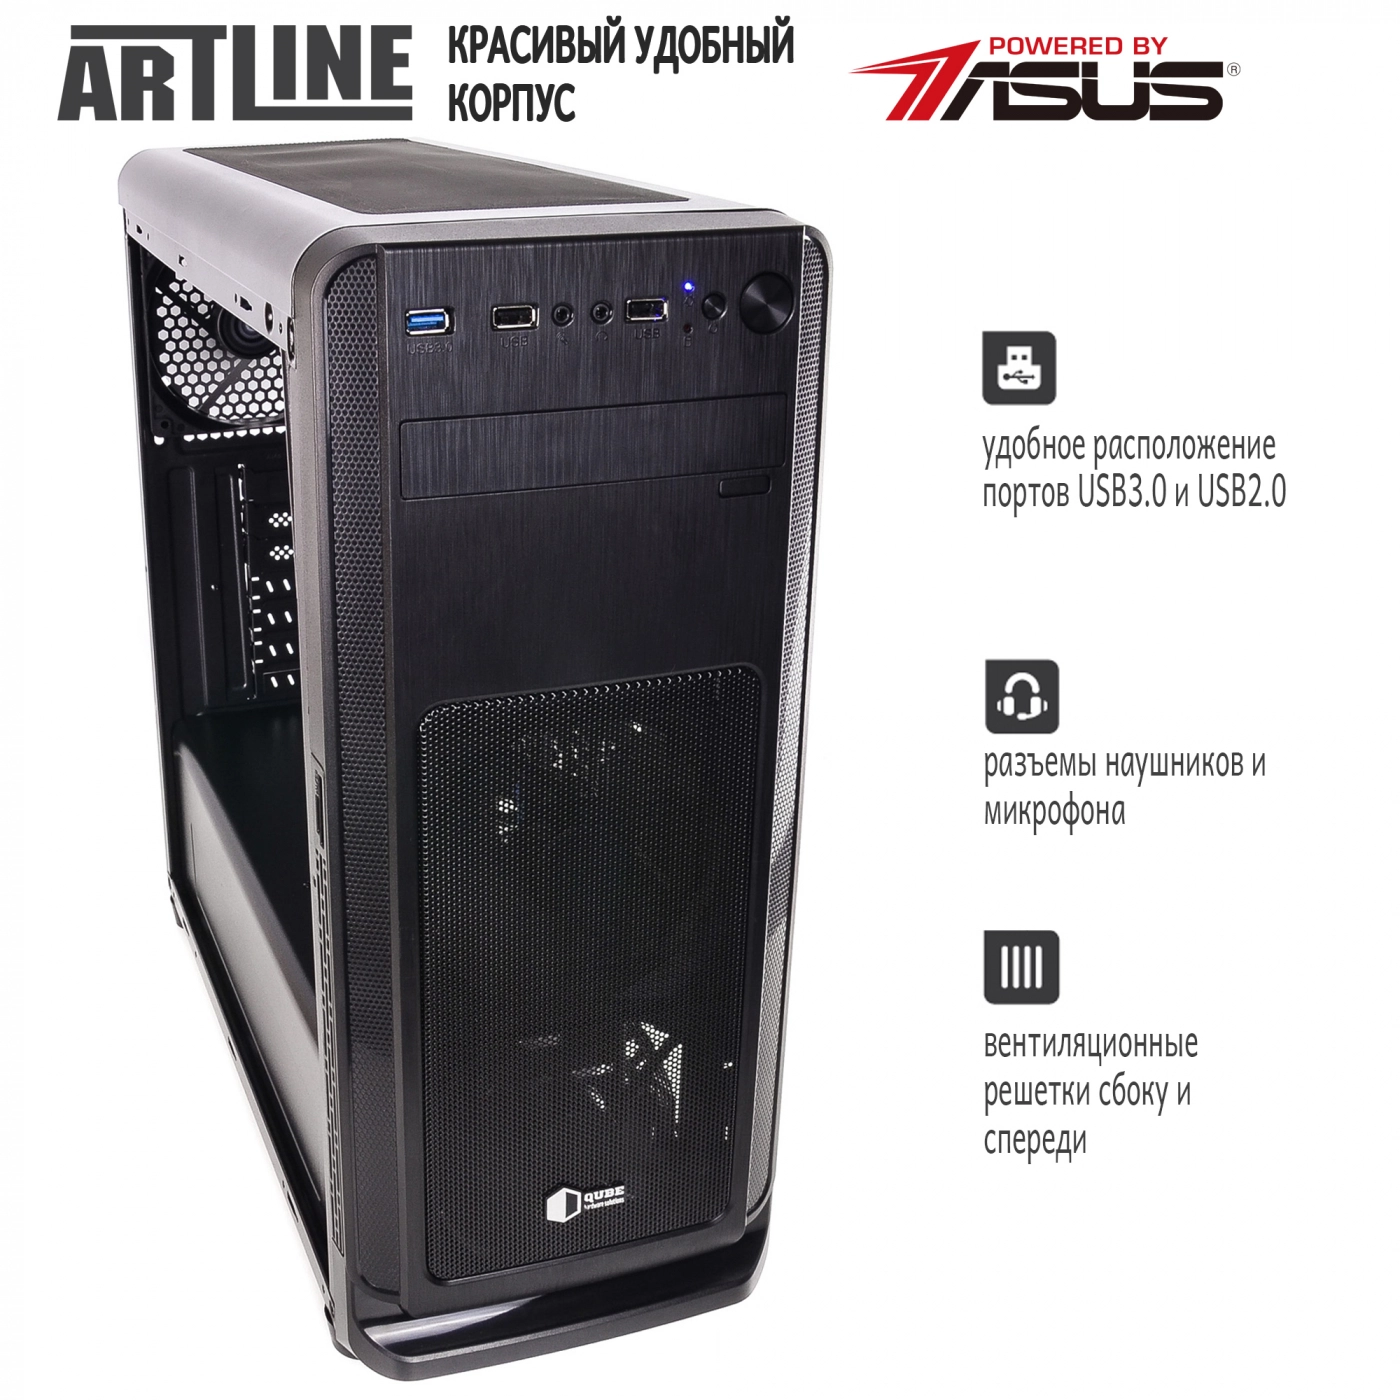 Купить Сервер ARTLINE Business T15v10 - фото 4